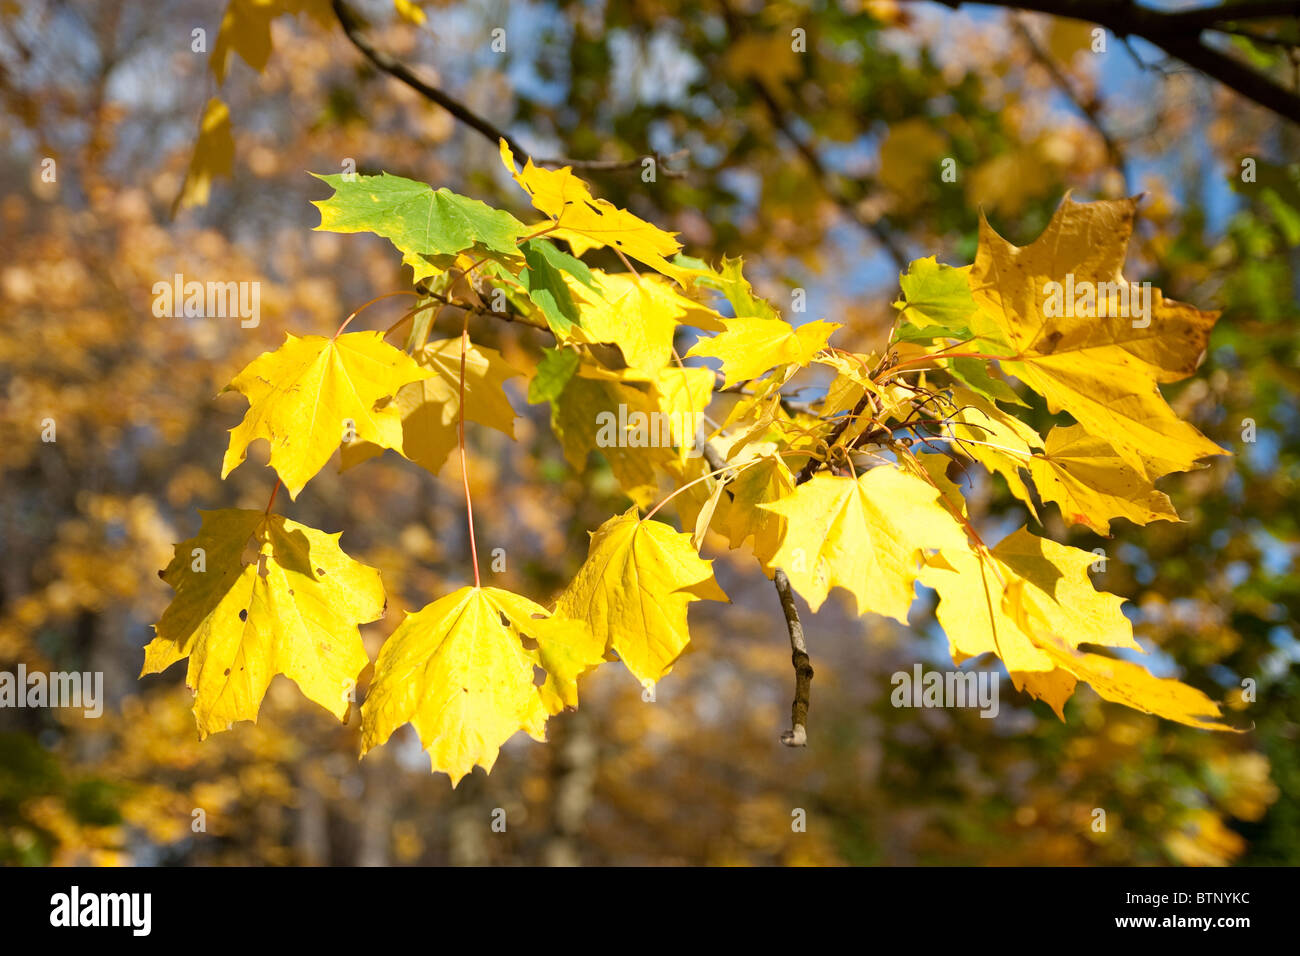 La couleur or de feuilles sur les arbres lors d'une résidence typique de la saison d'automne Banque D'Images